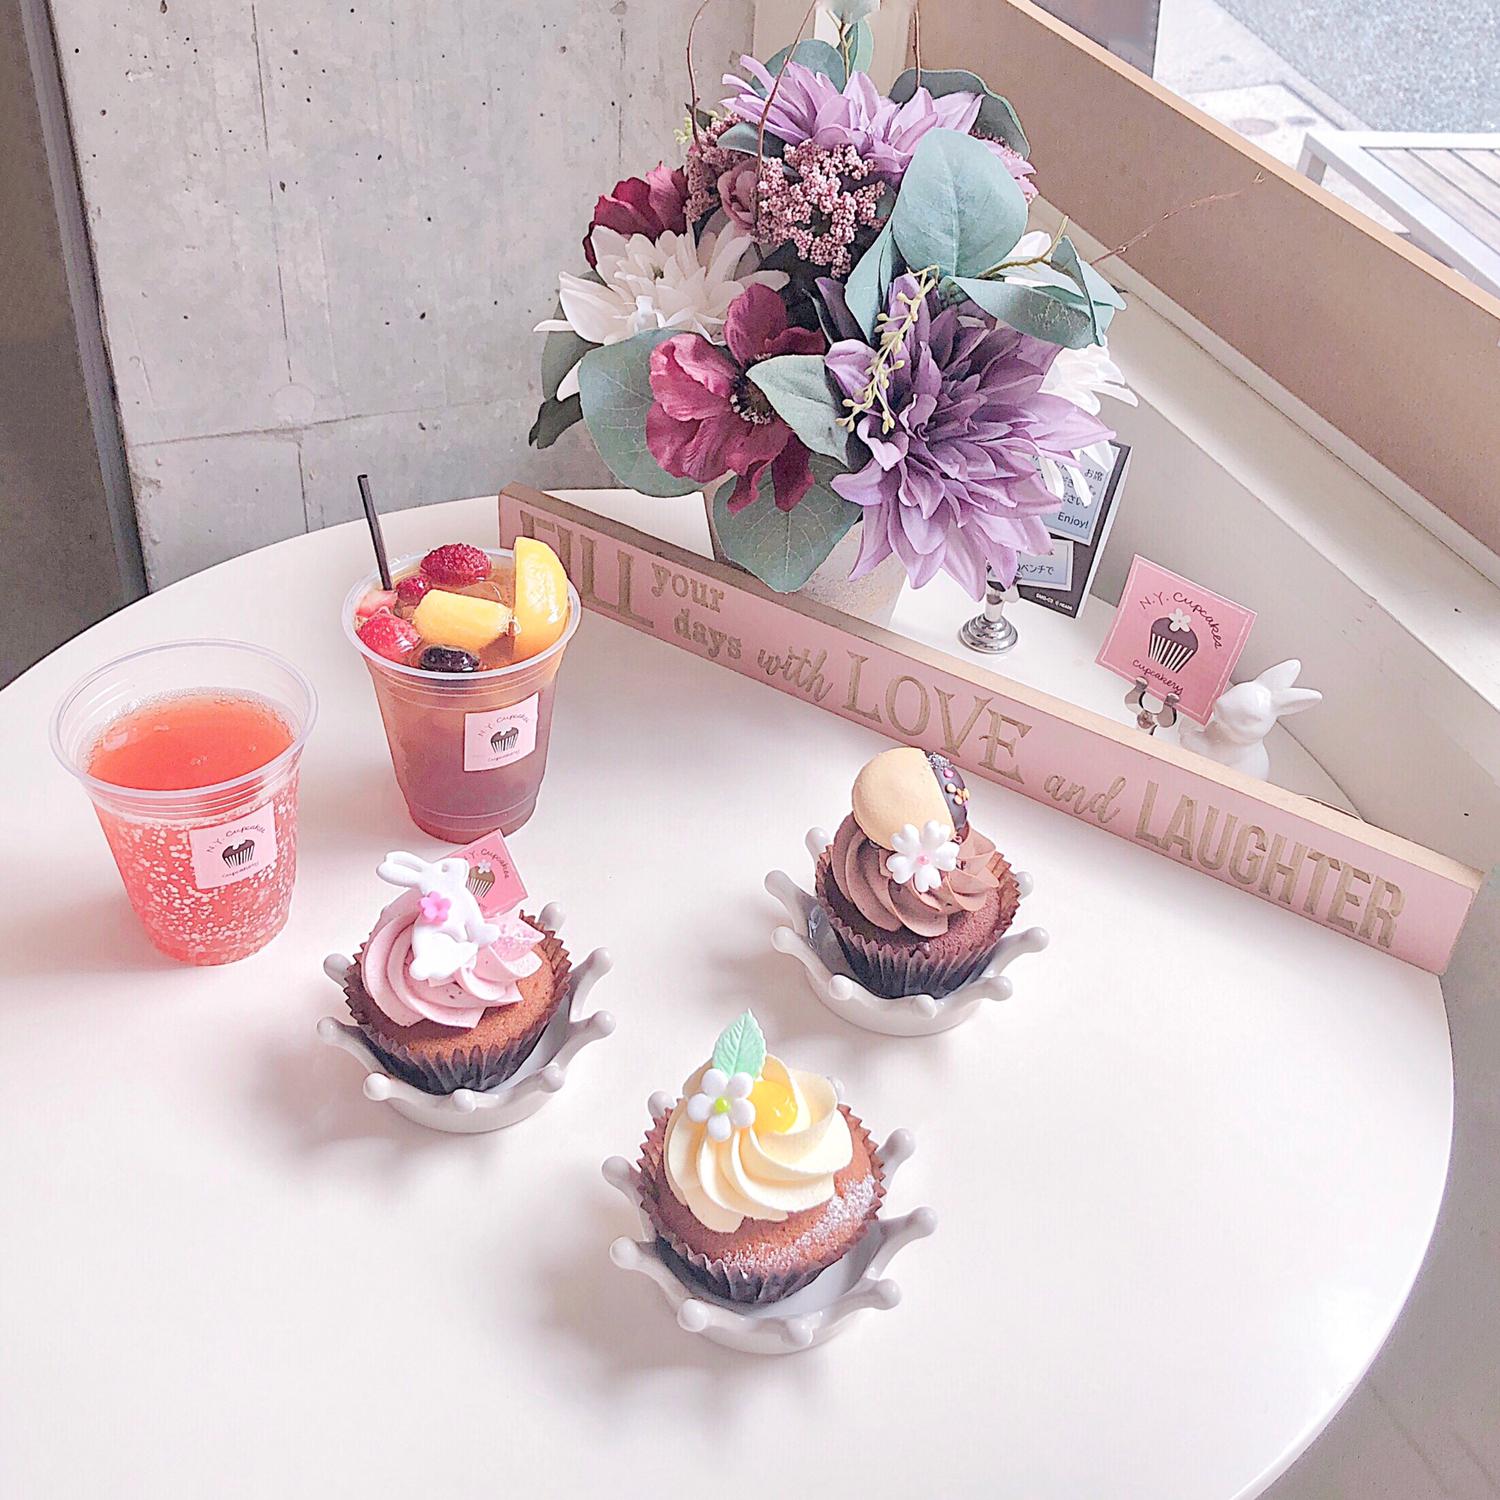 可愛いカップケーキが絶品 下北沢 N Y Cupcakes が穴場すぎる Yu カフェ男子が投稿したフォトブック Lemon8